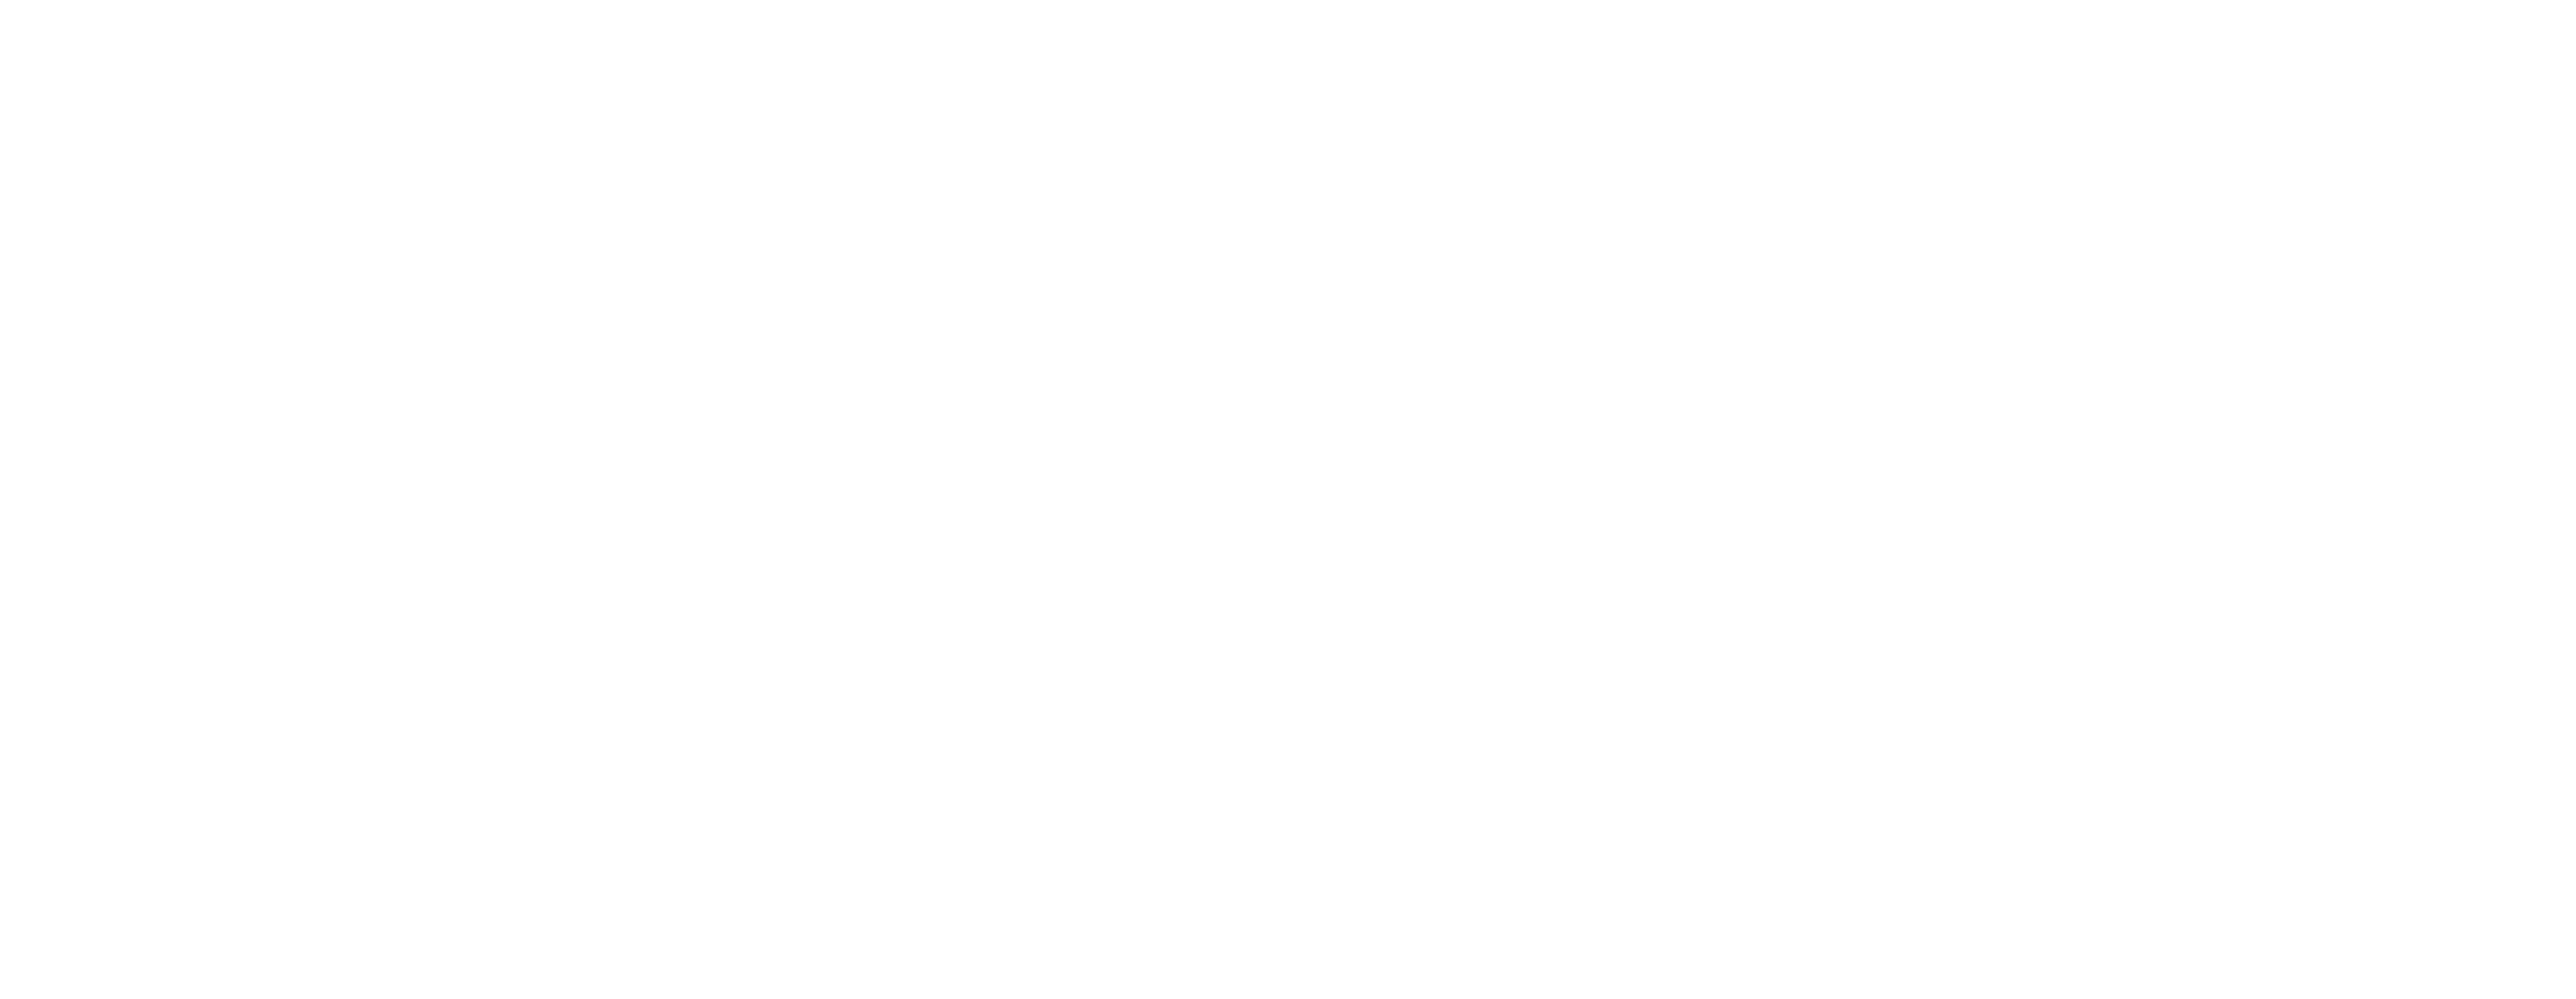 3 Ninjas: High Noon at Mega Mountain logo